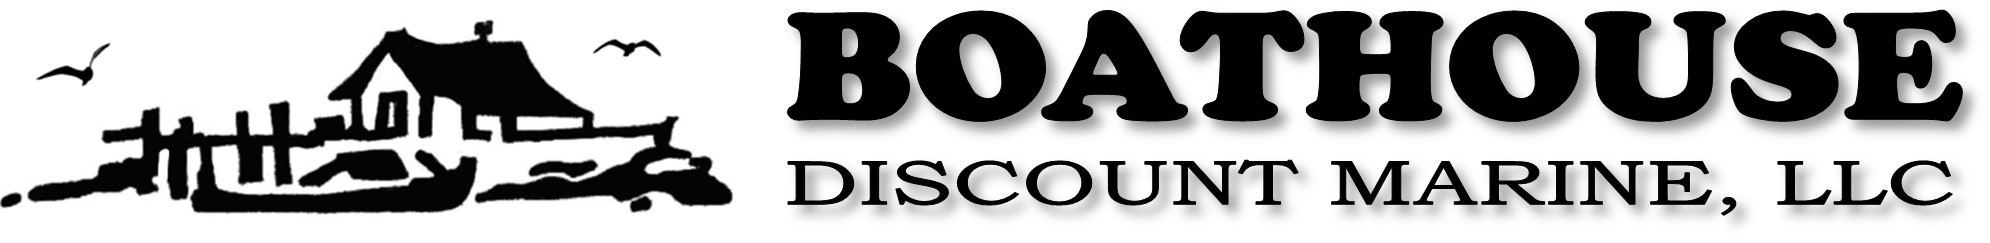 boathousediscountmarine.com logo